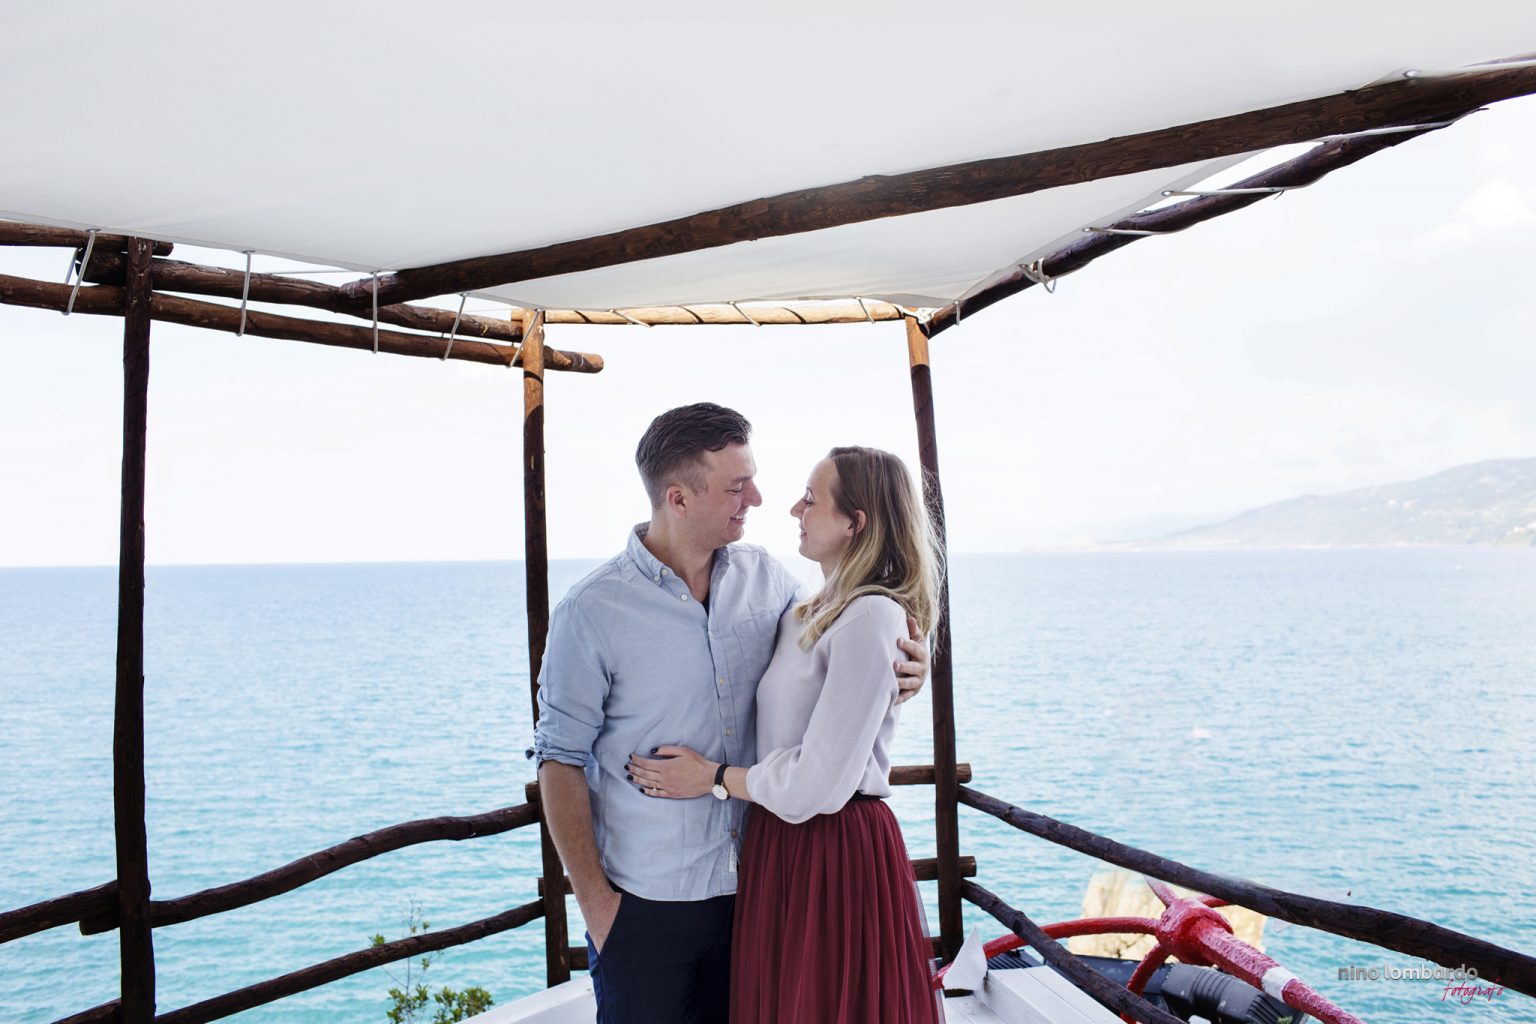 Servizio fotografico per una proposta di fidanzamento a sorpresa all'Hotel Kalura di Cefalù e shooting in spiaggia